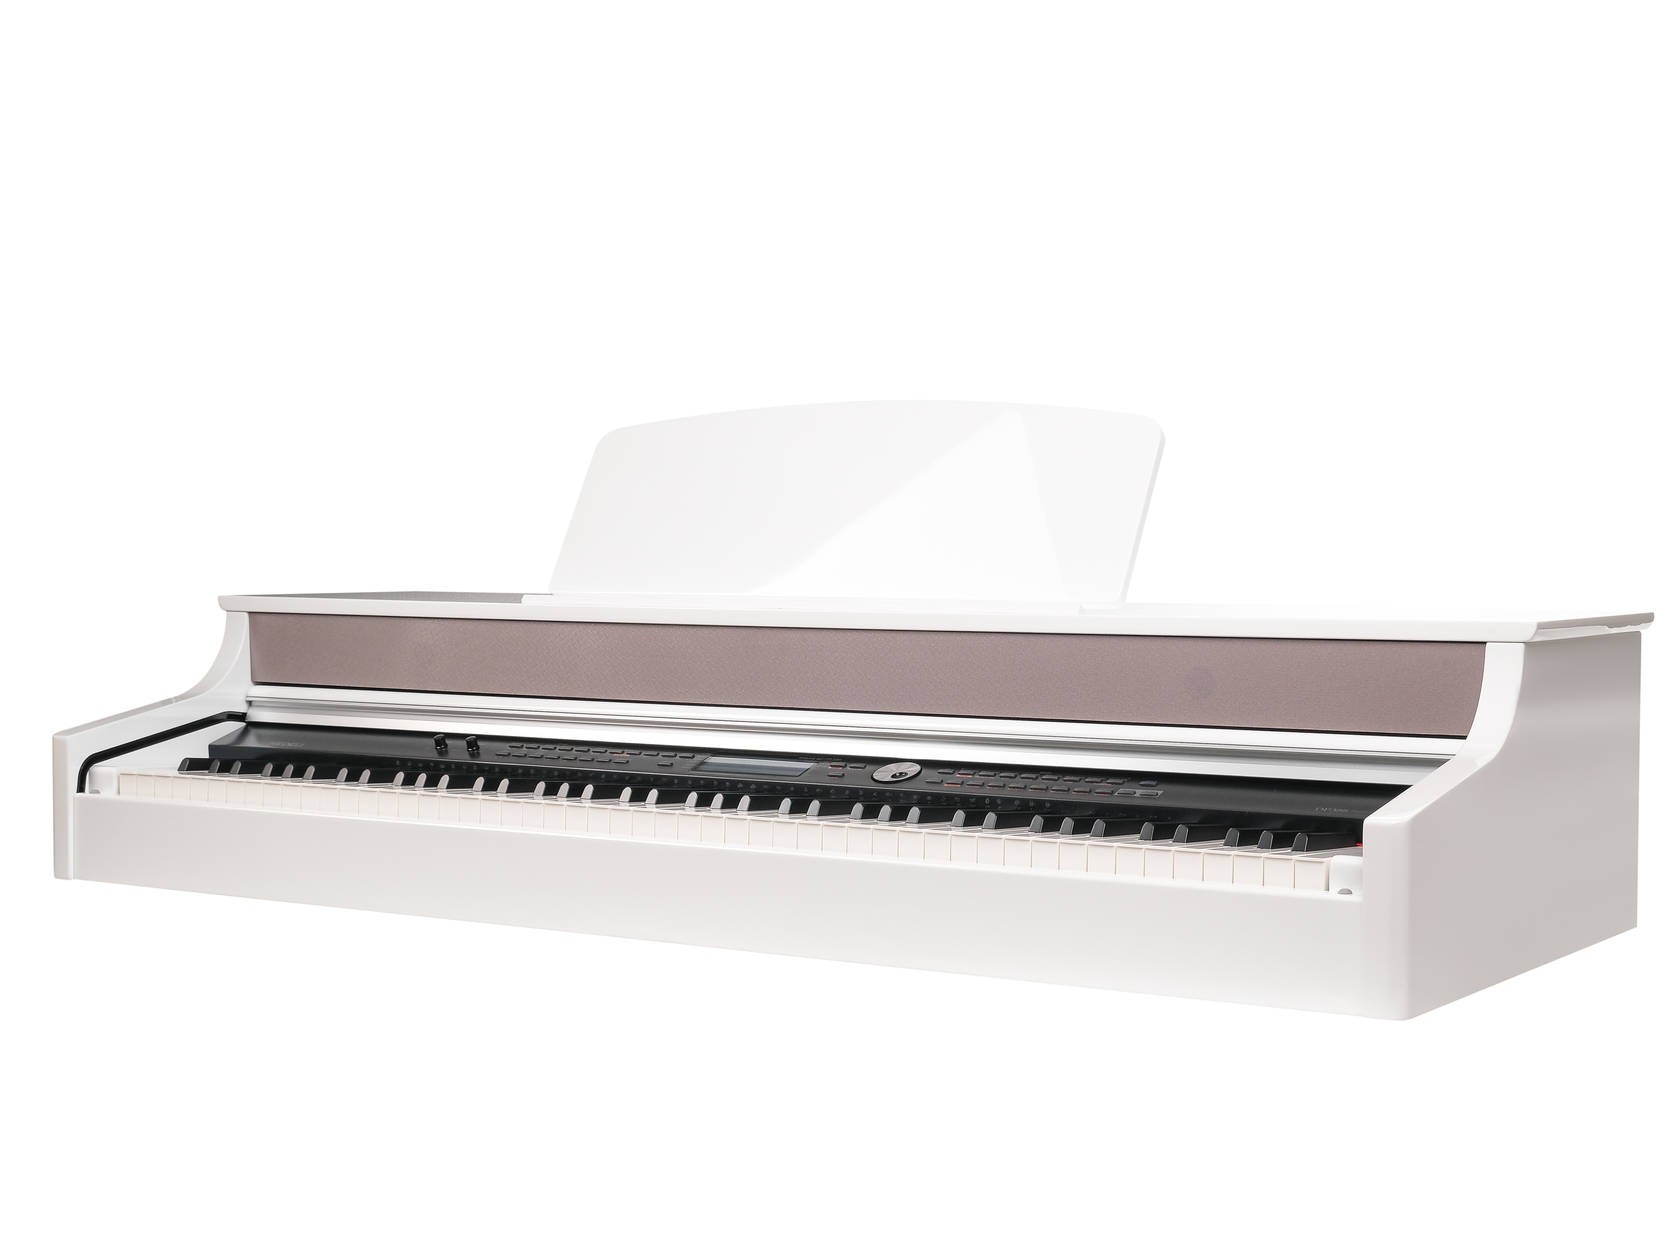 Цифровое пианино Medeli DP388-GW